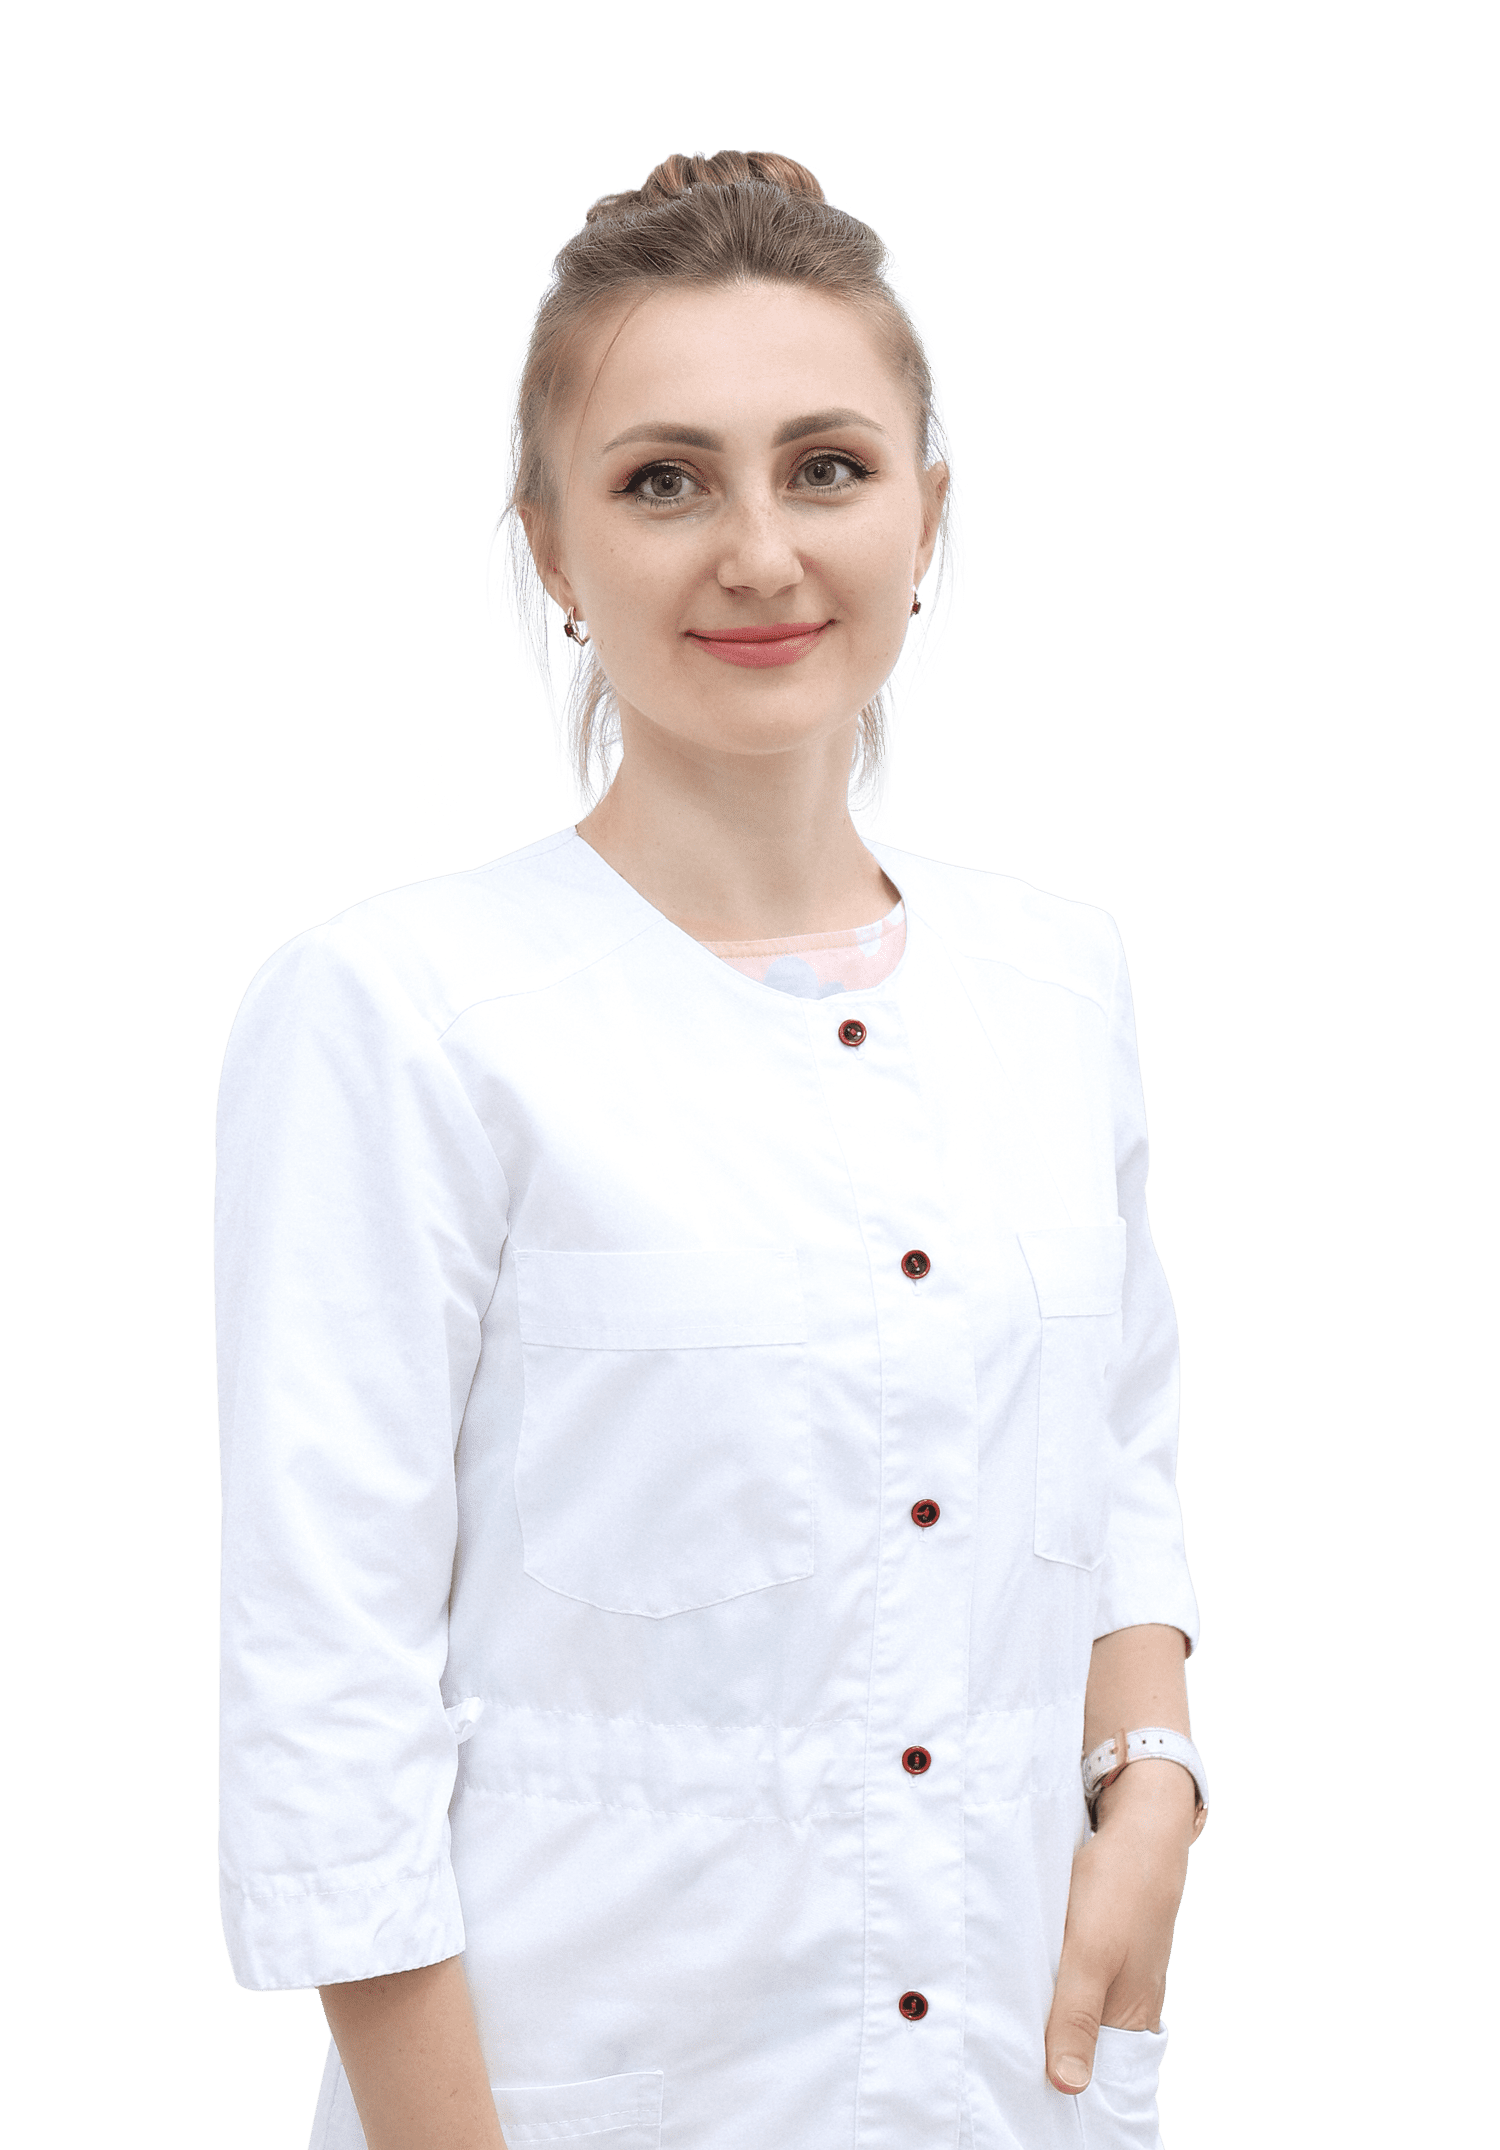 Коваленко Вікторія Юріївна